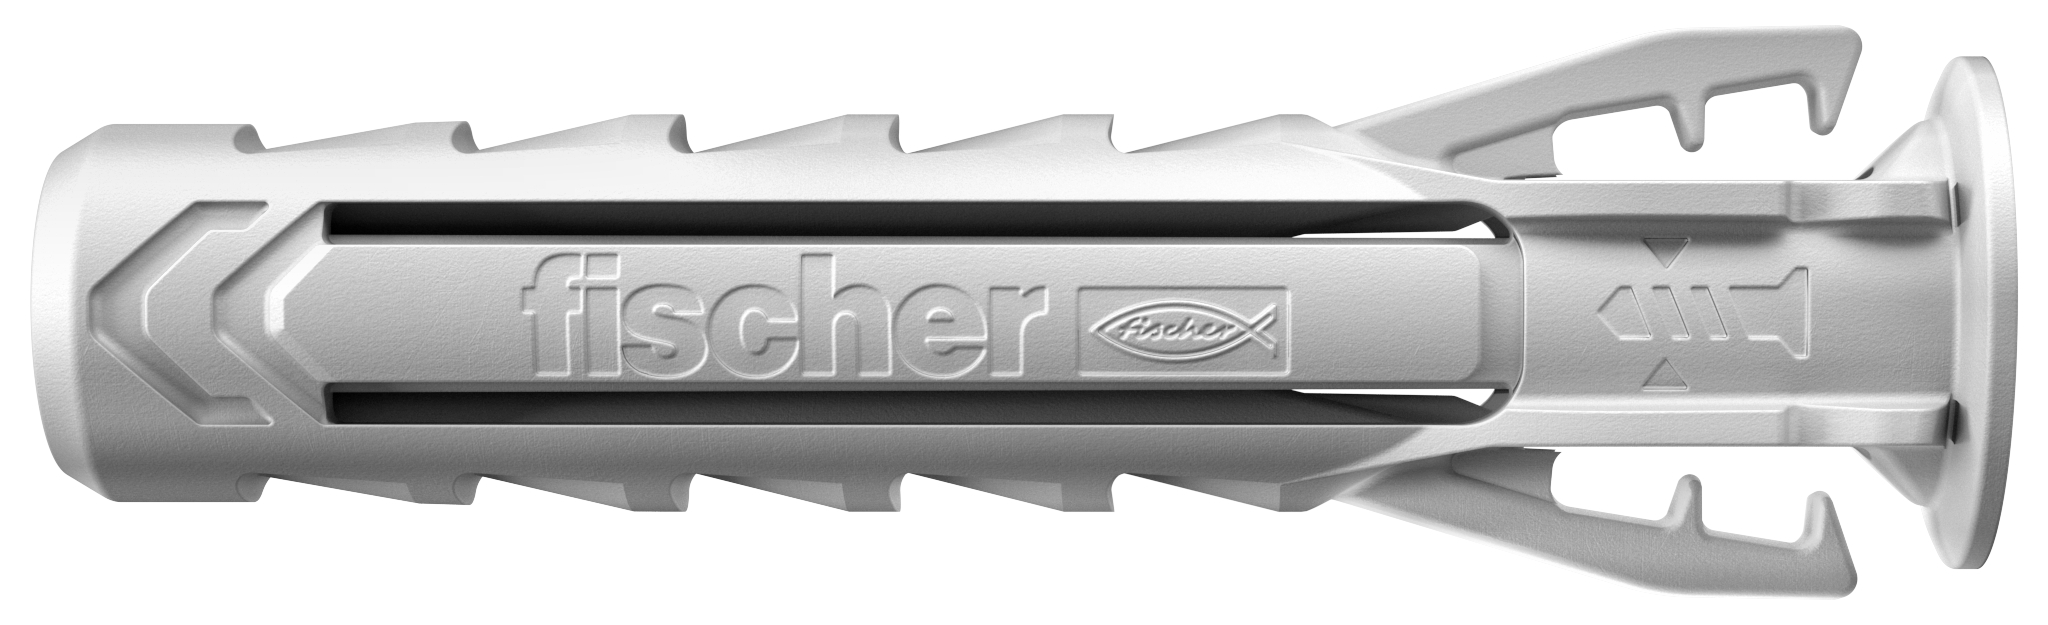 Fischer SX Plus 10 x 50 K. Der Spezialist im Vollbaustoff.